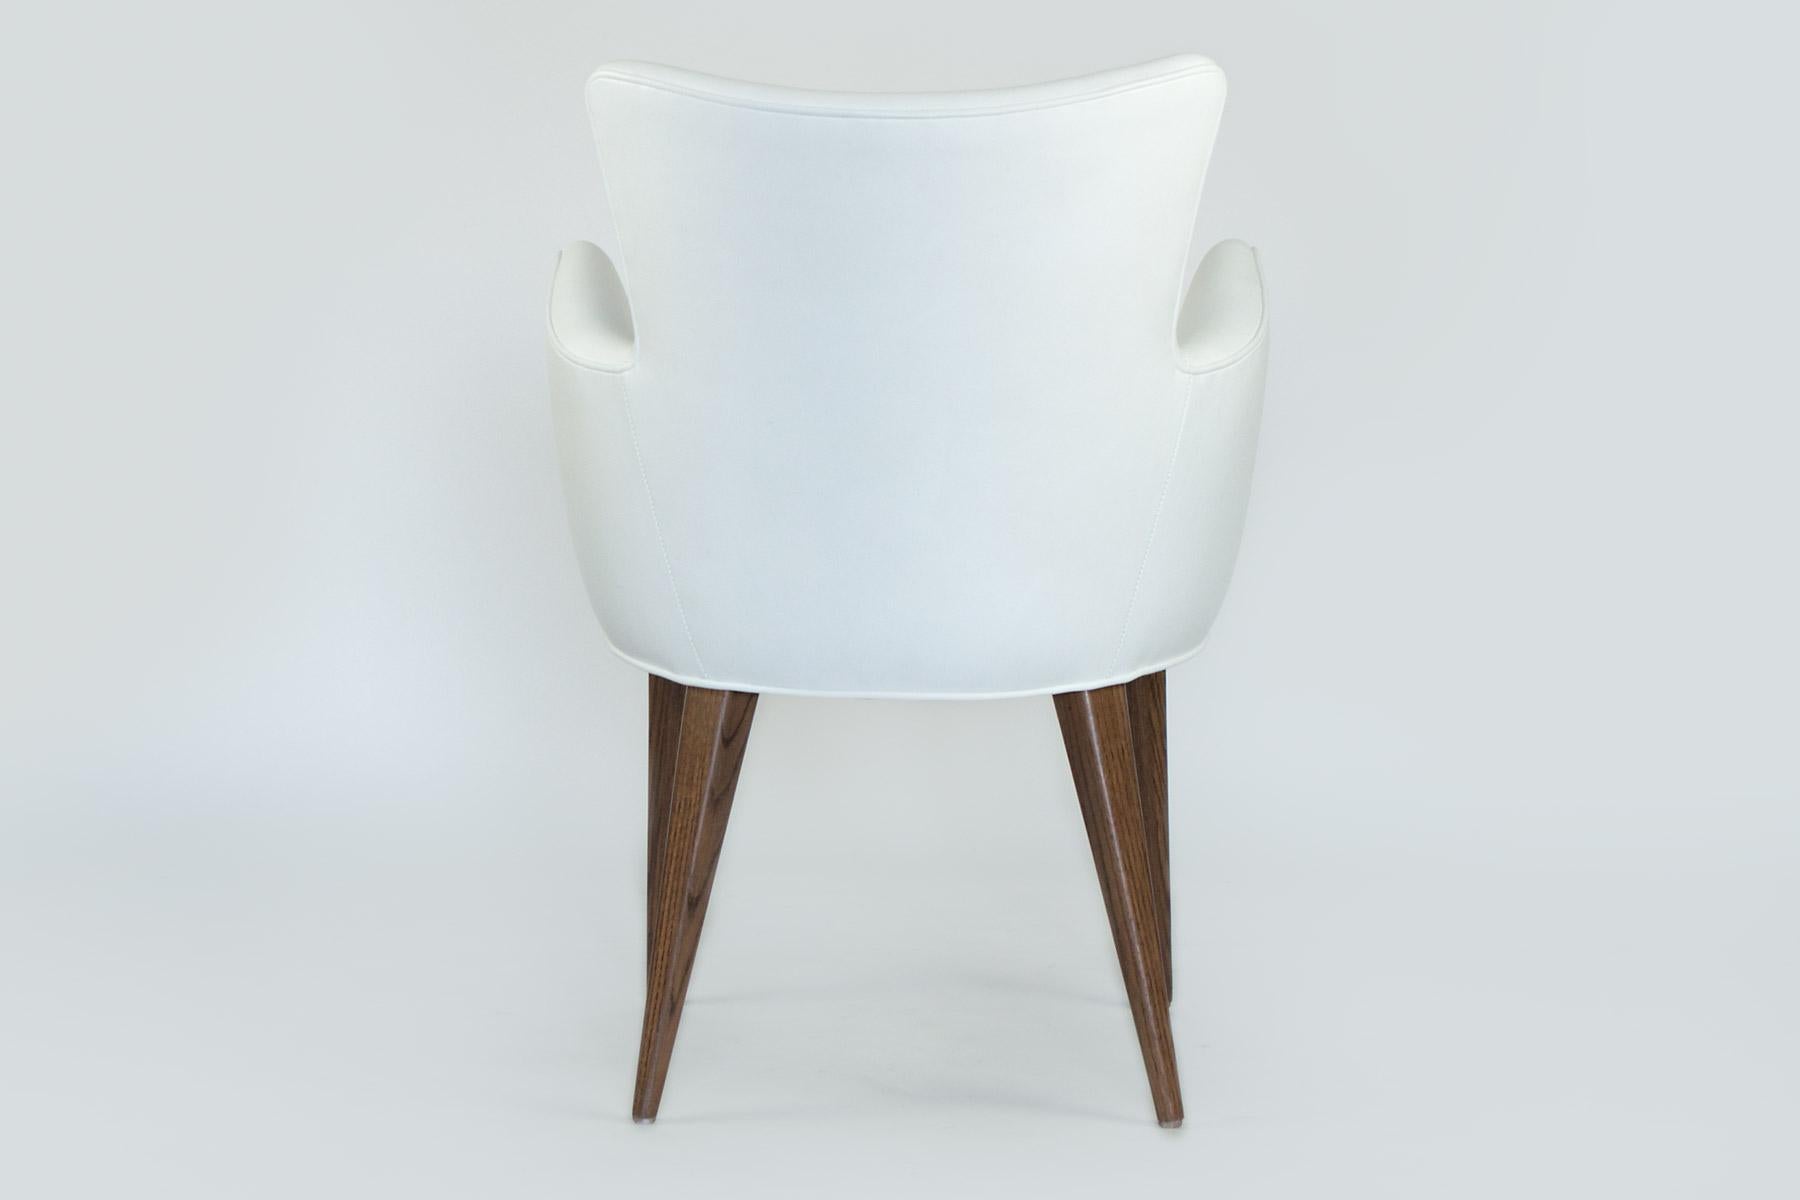 Dieser stilvolle Stuhl kann allein als Beistellstuhl stehen oder eignet sich perfekt für das Esszimmer. Er hat moderne Linien, aber die Eichenbeine passen gut zu jeder Holzeinrichtung. Der geschwungene Rahmen schmiegt sich bequem an Sie an und die